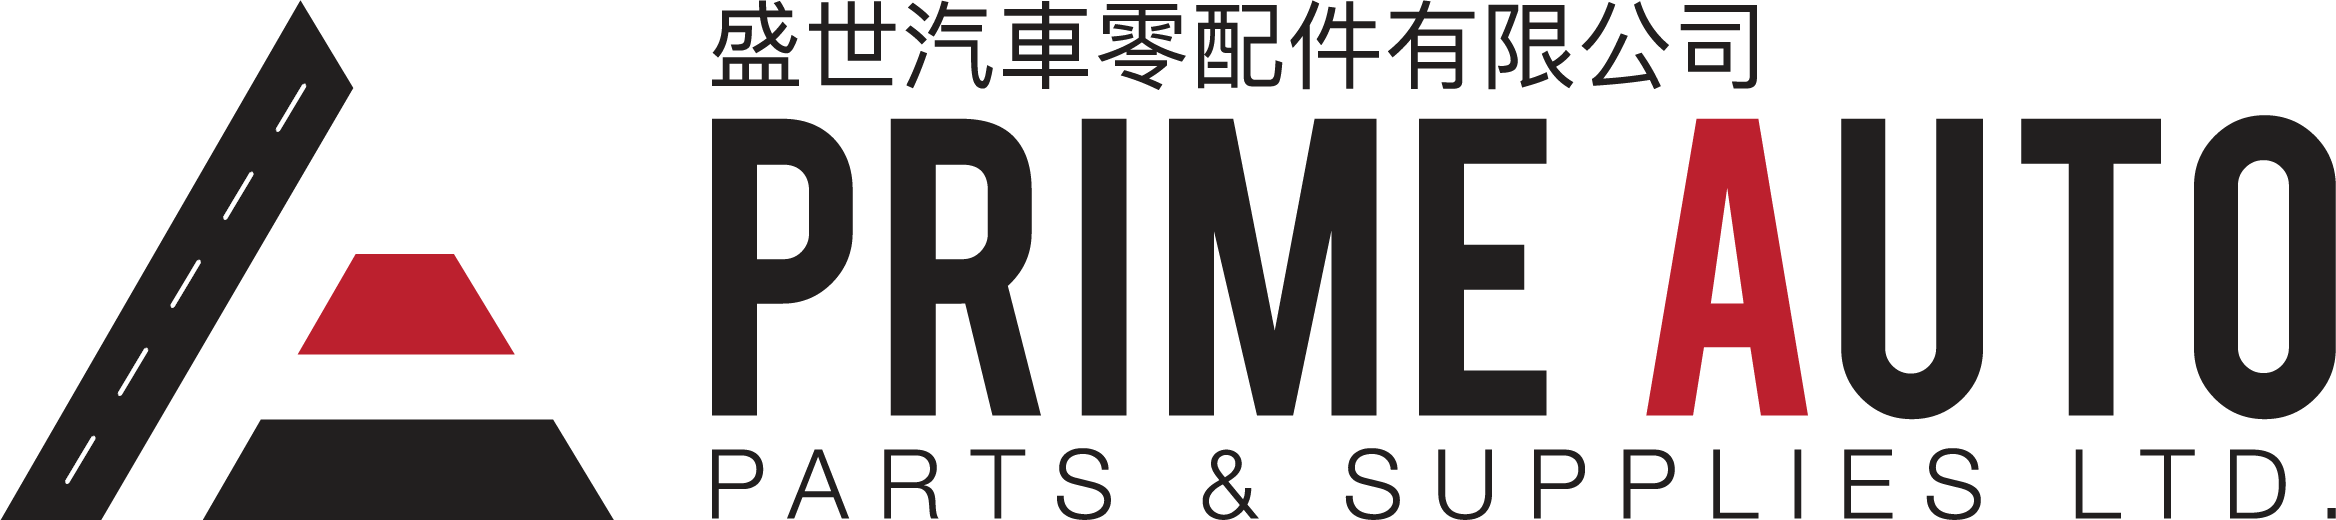 Prime Auto_logo